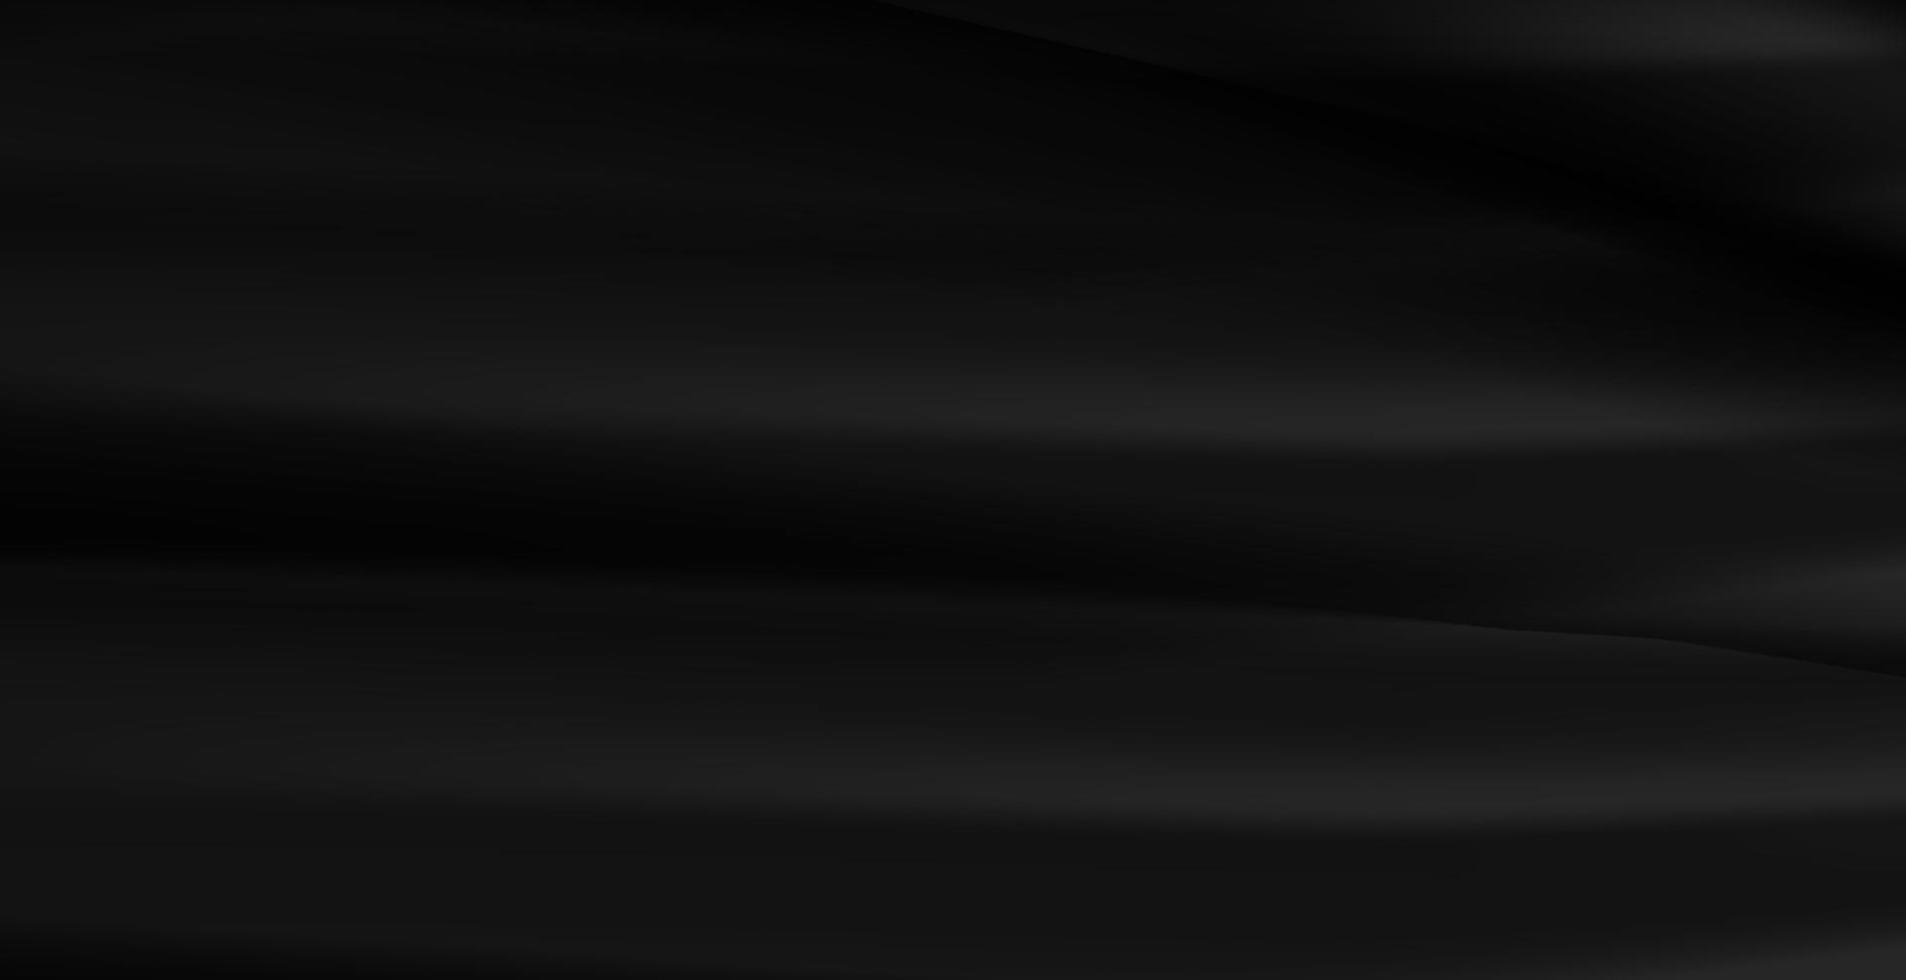 zwarte achtergrond met textuur vectorontwerp, bannerpatroon, achtergrondconcept vector